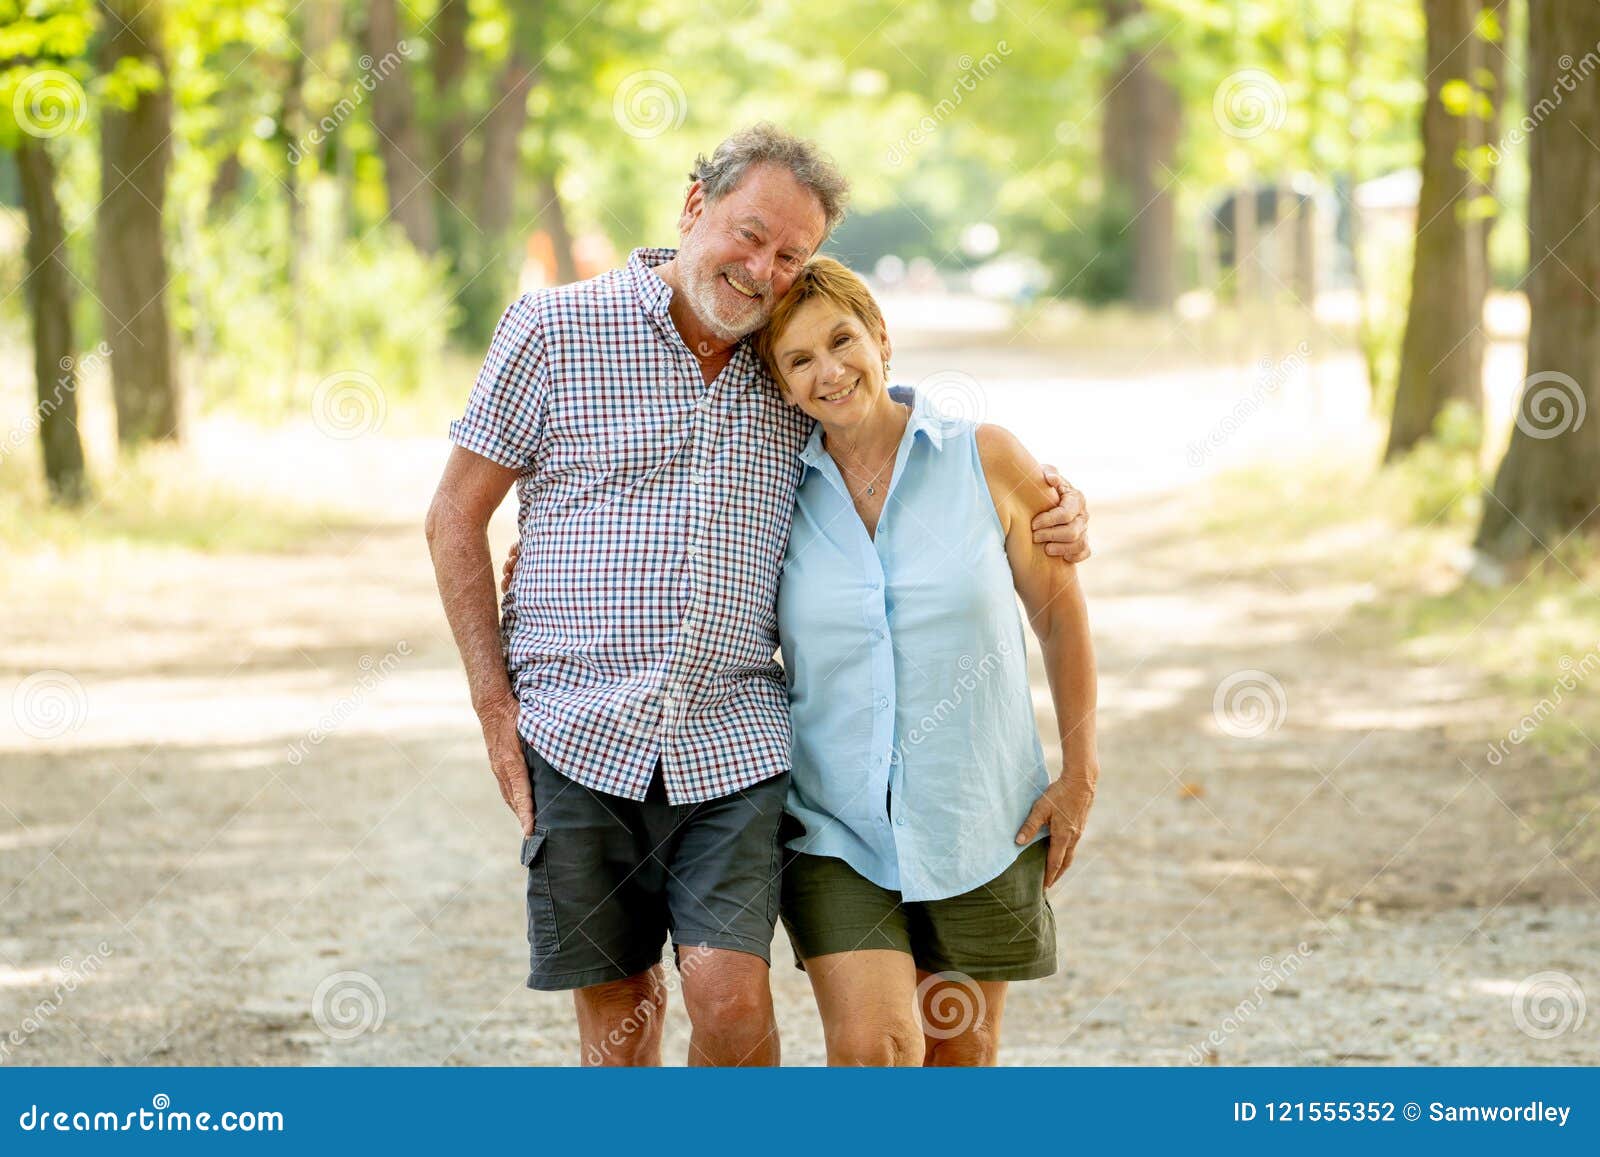 happy senior couple walking and enjoying life outdoors